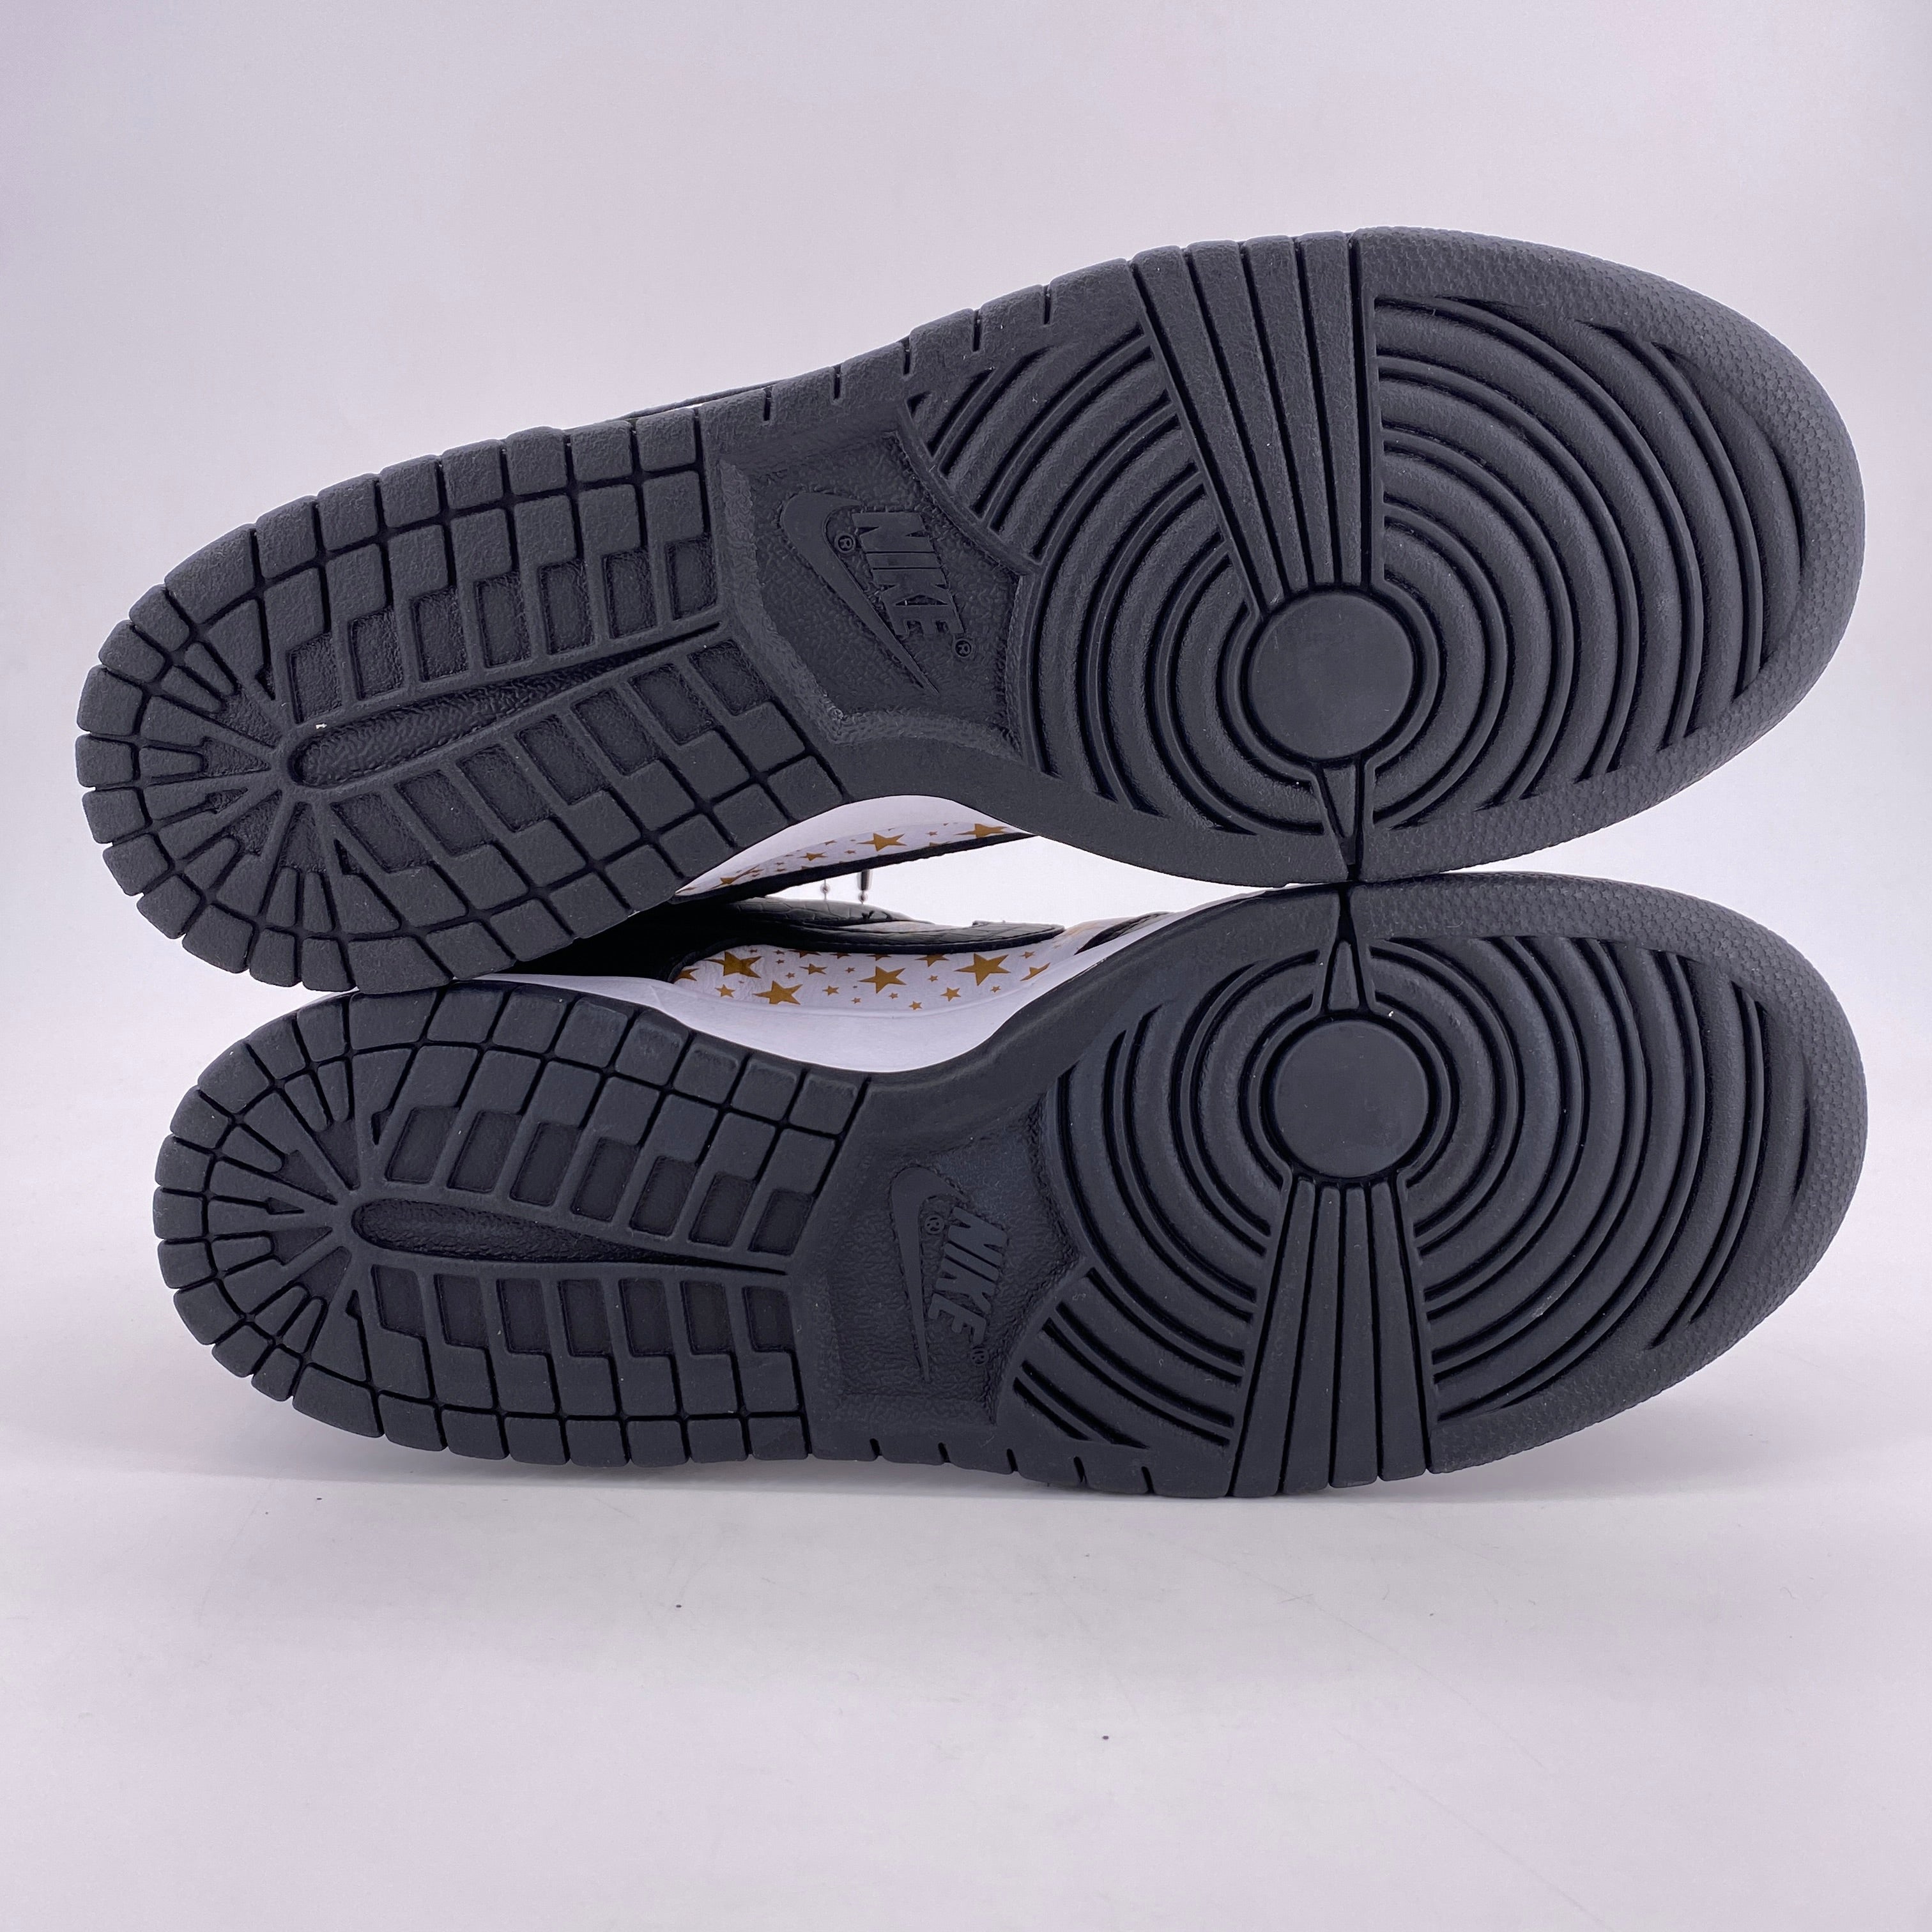 Nike SB Dunk Low OG QS "Supreme Black" 2021 New Size 9.5